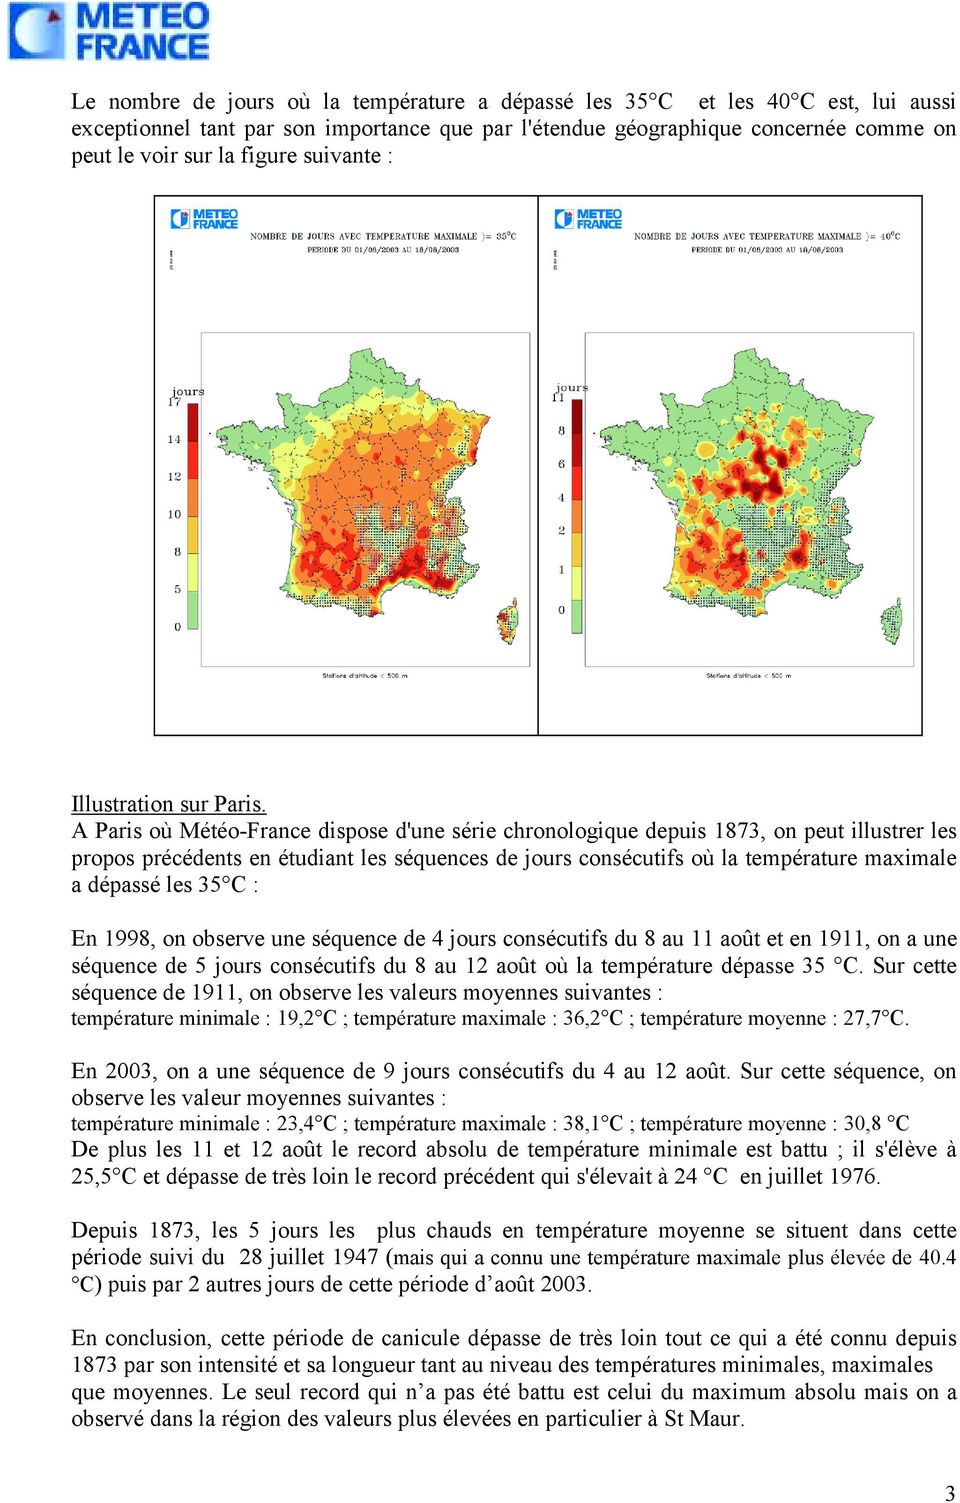 A Paris où Météo-France dispose d'une série chronologique depuis 1873, on peut illustrer les propos précédents en étudiant les séquences de jours consécutifs où la température maximale a dépassé les